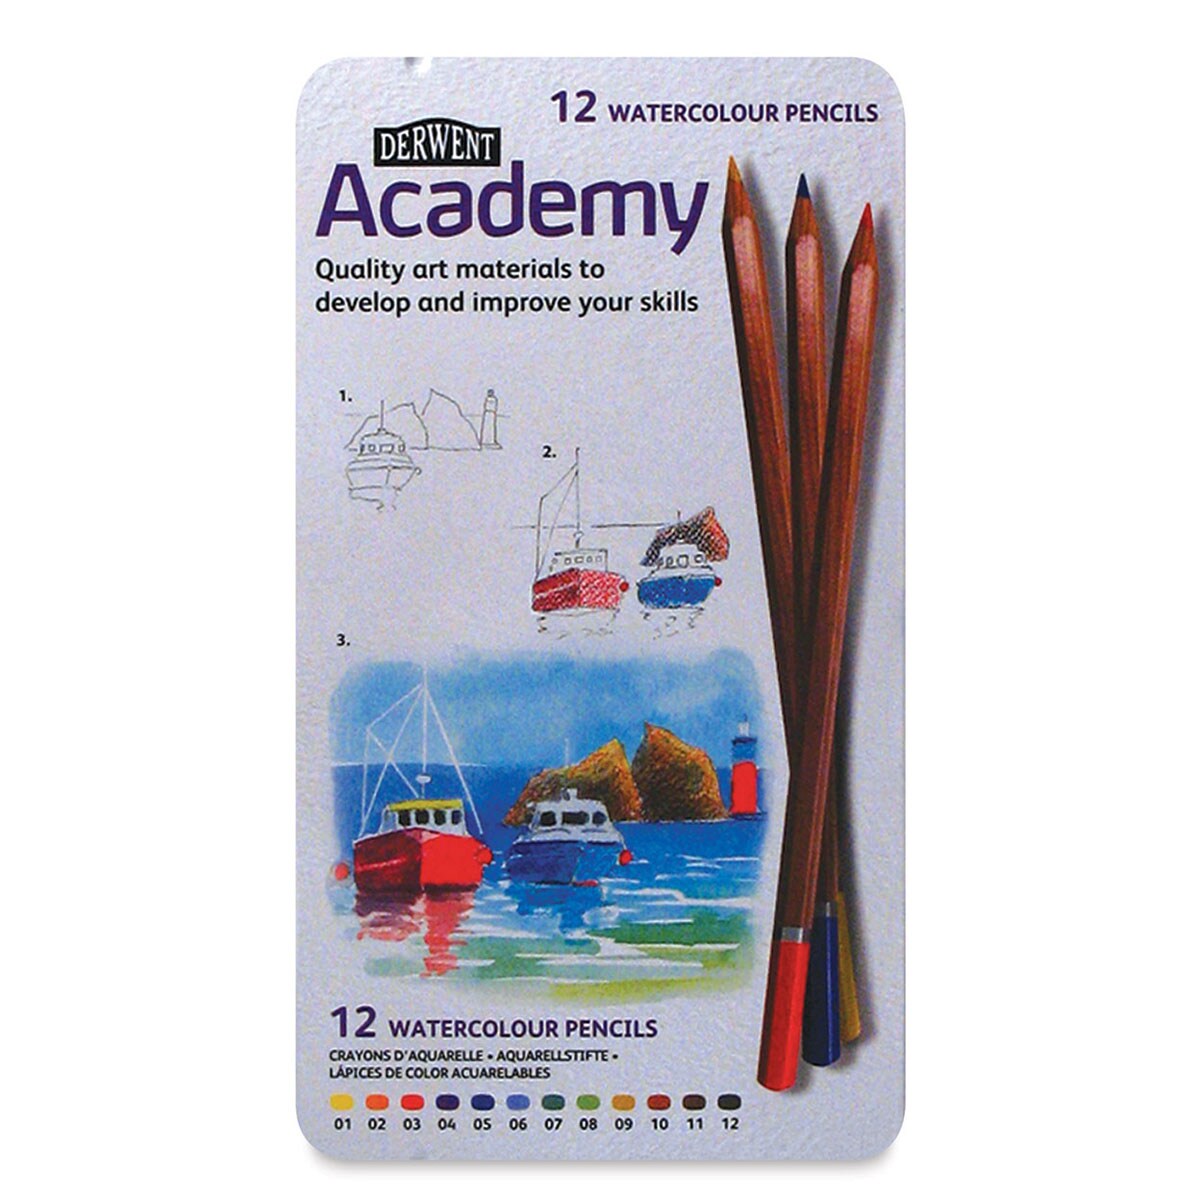 Derwent Academy Watercolor Pencils